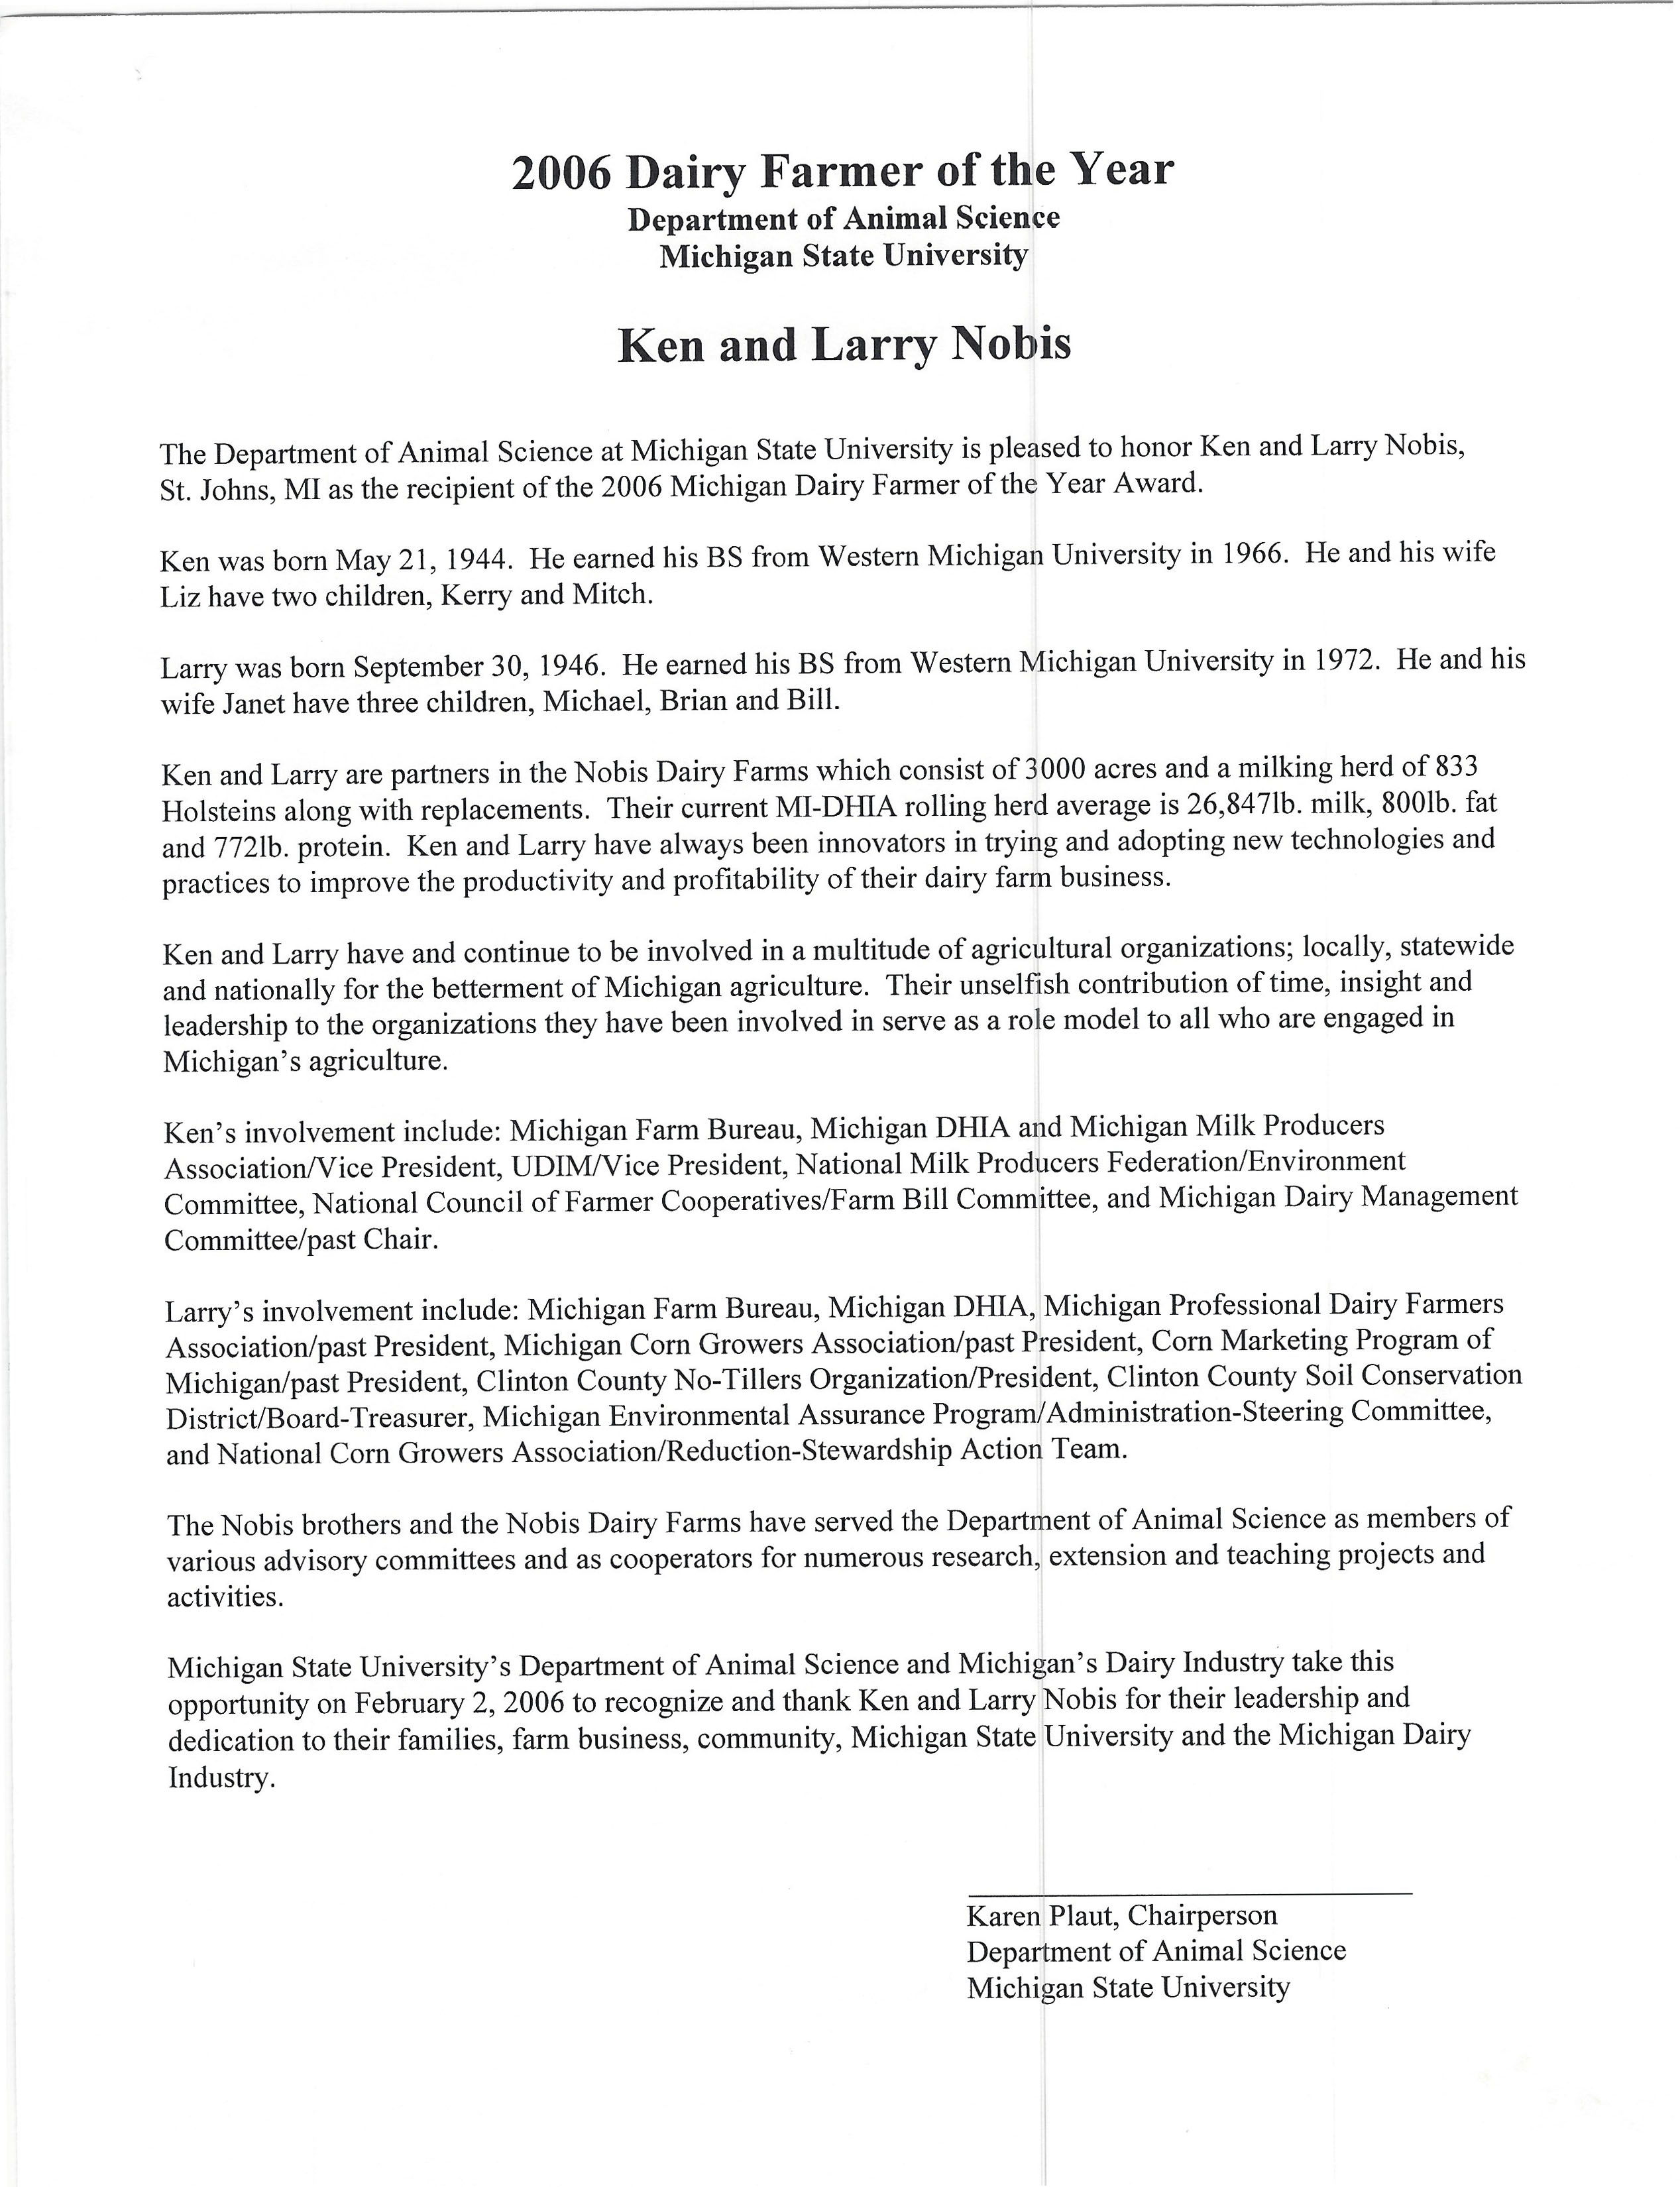 2006 Ken and Larry Nobis